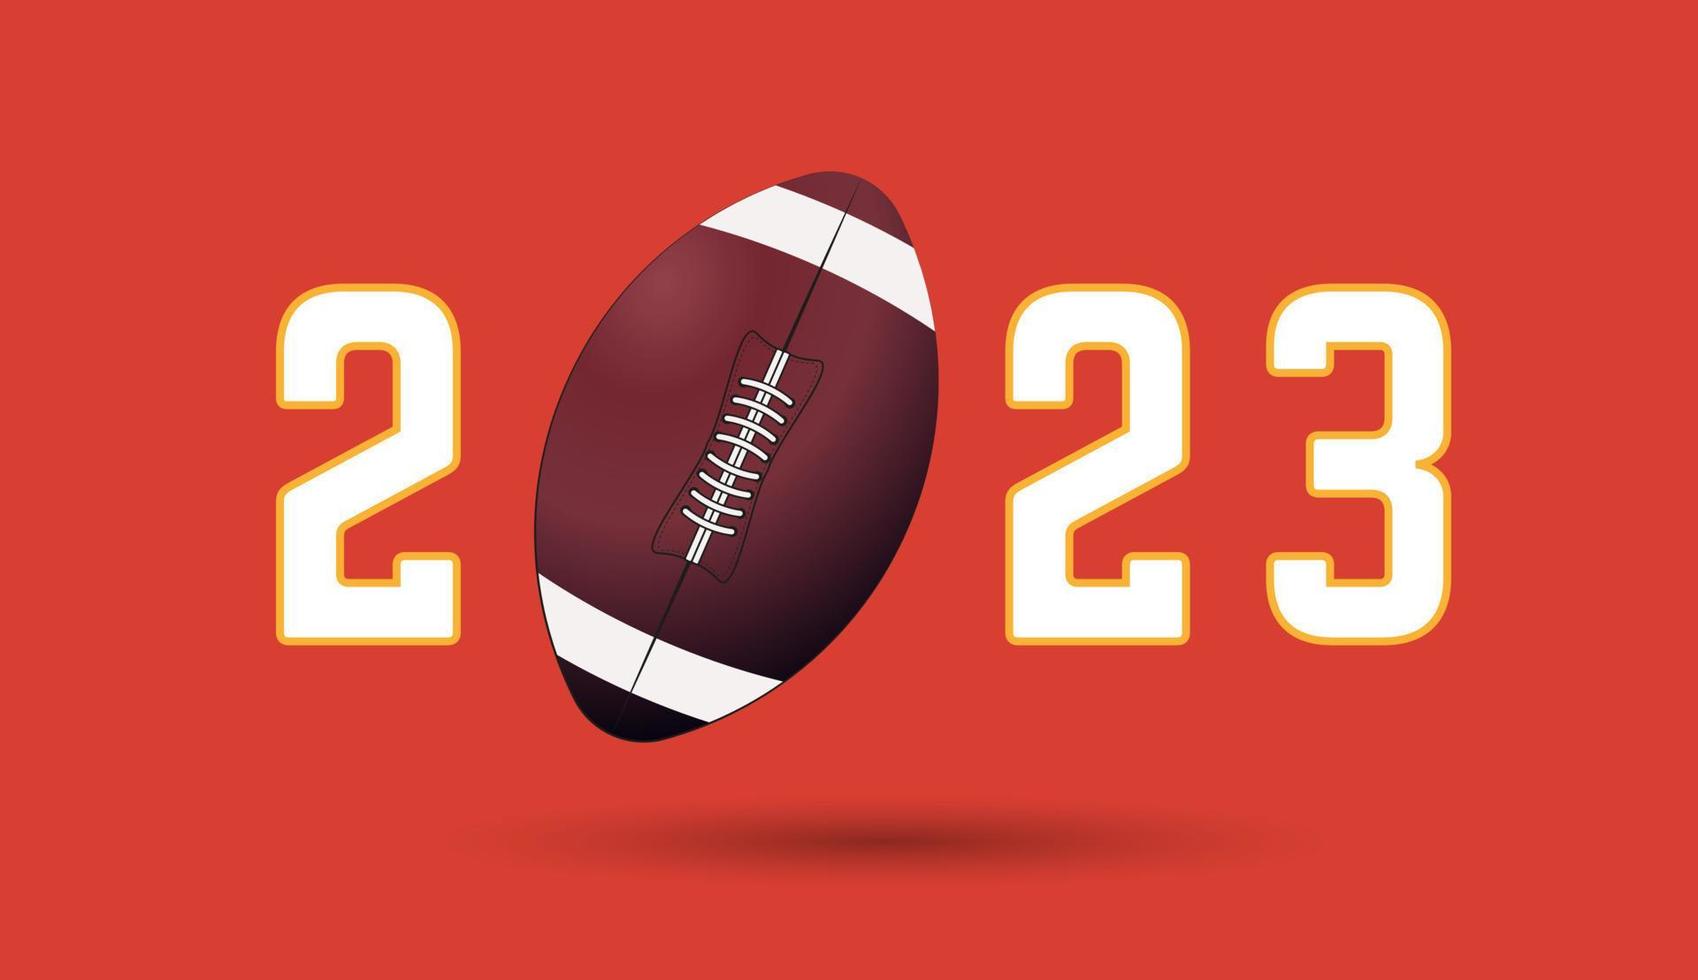 2023 de américain Football correspondre, une Football Balle sur année des lettres, pour des sports notions, bannière, affiche. vecteur illustration